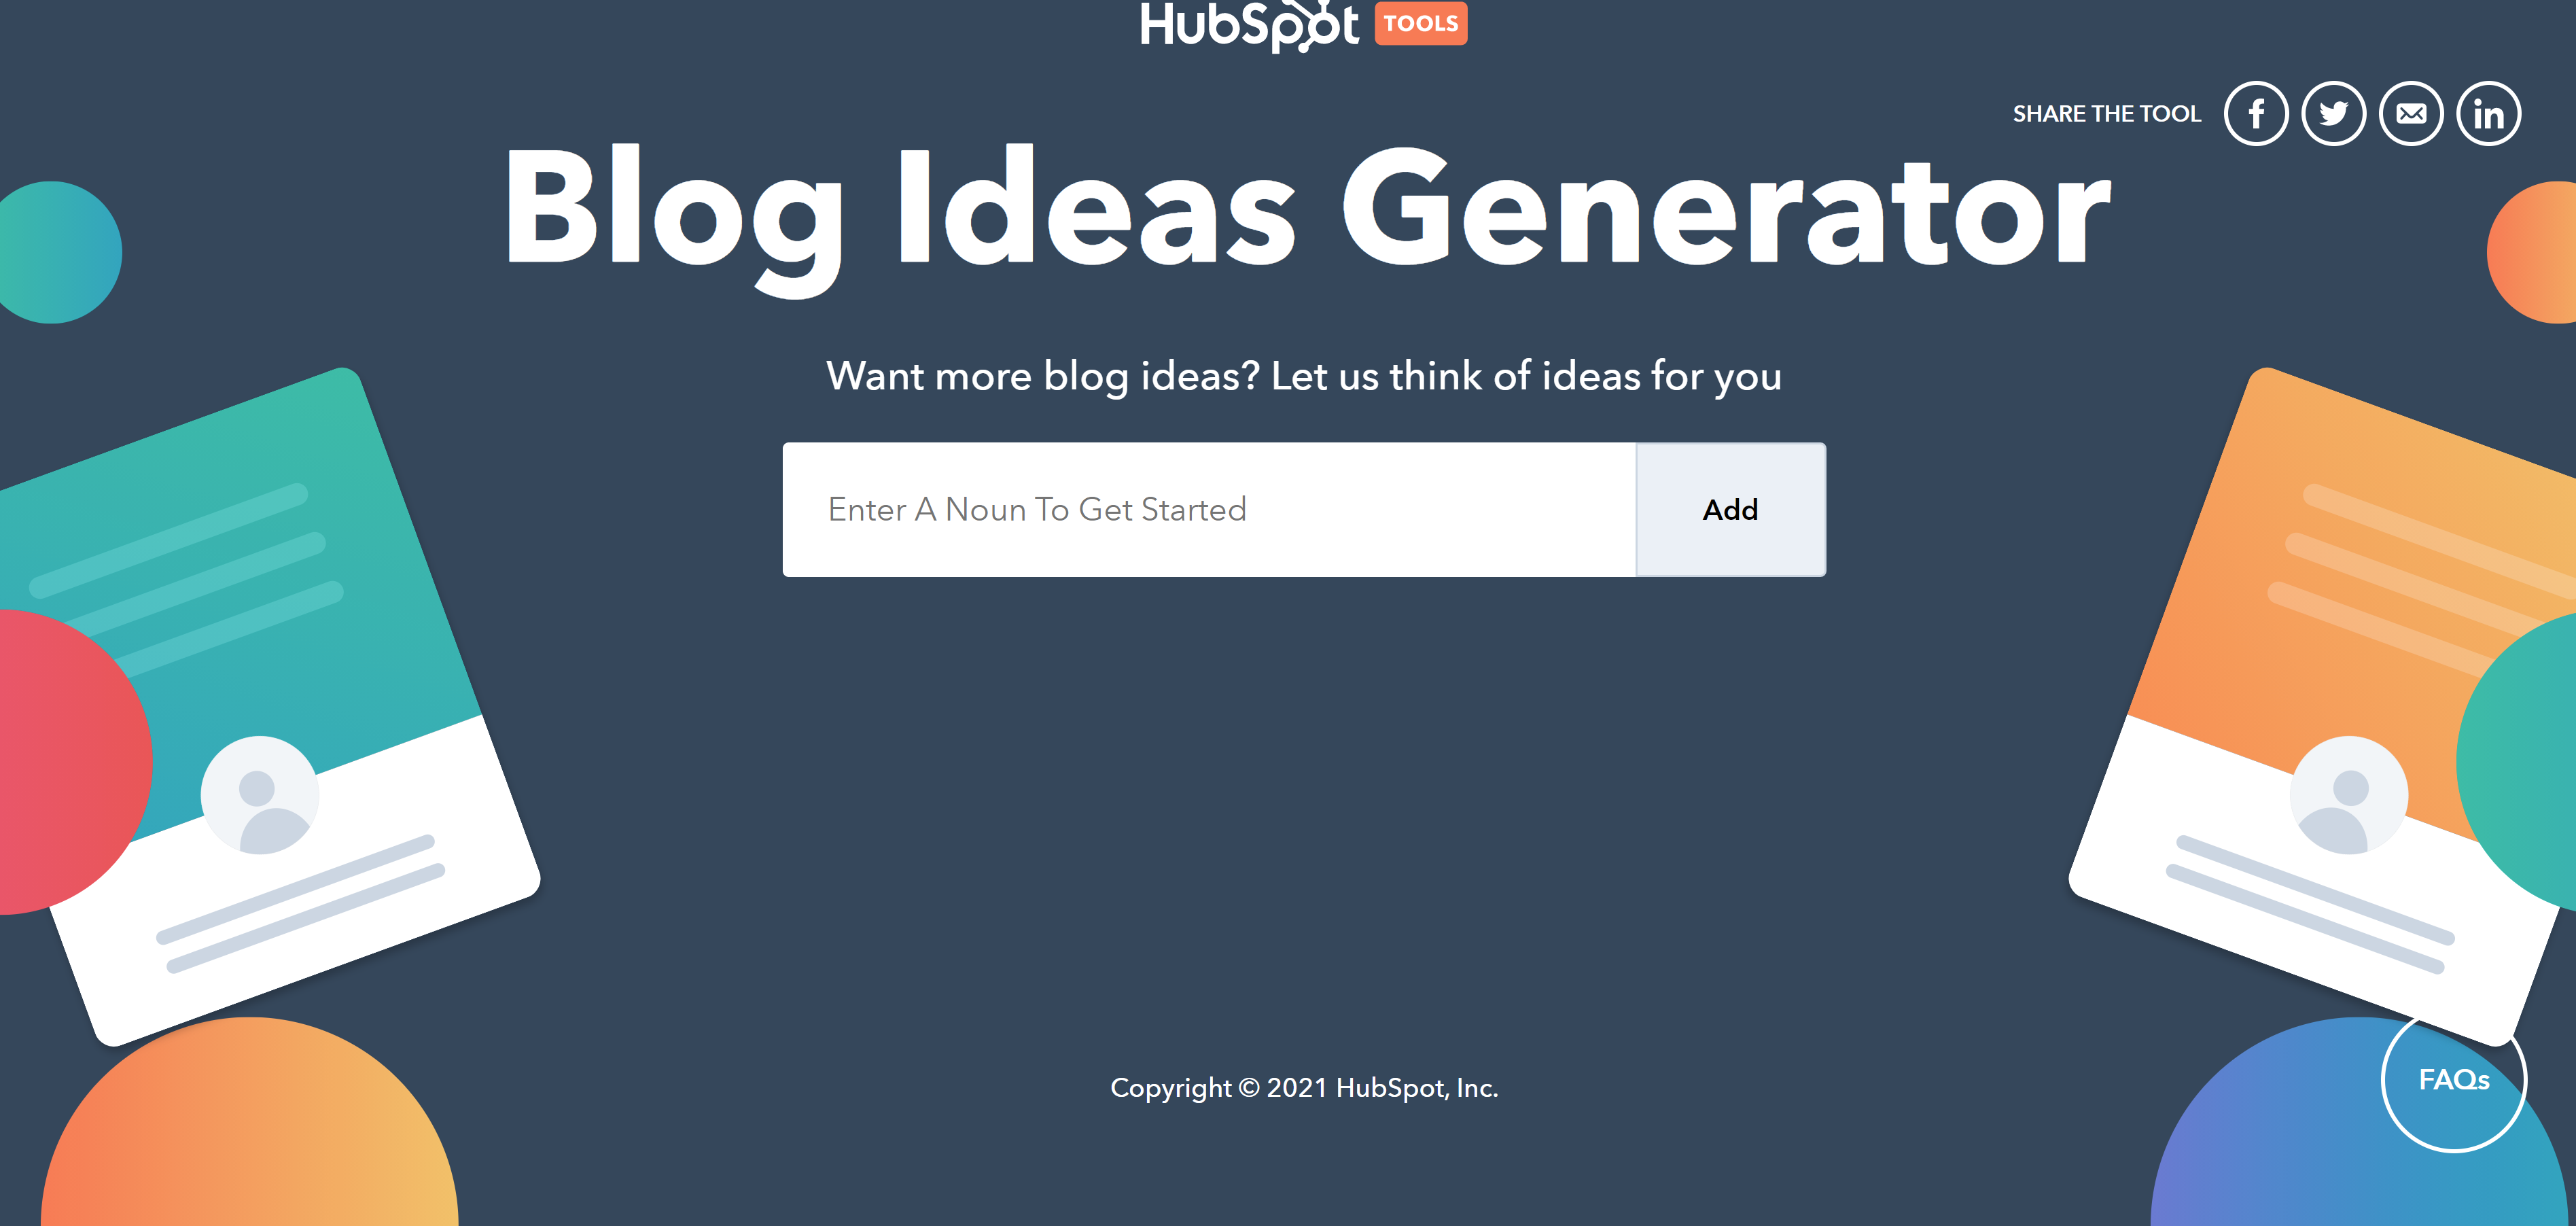 HubSpot Blog Ideas